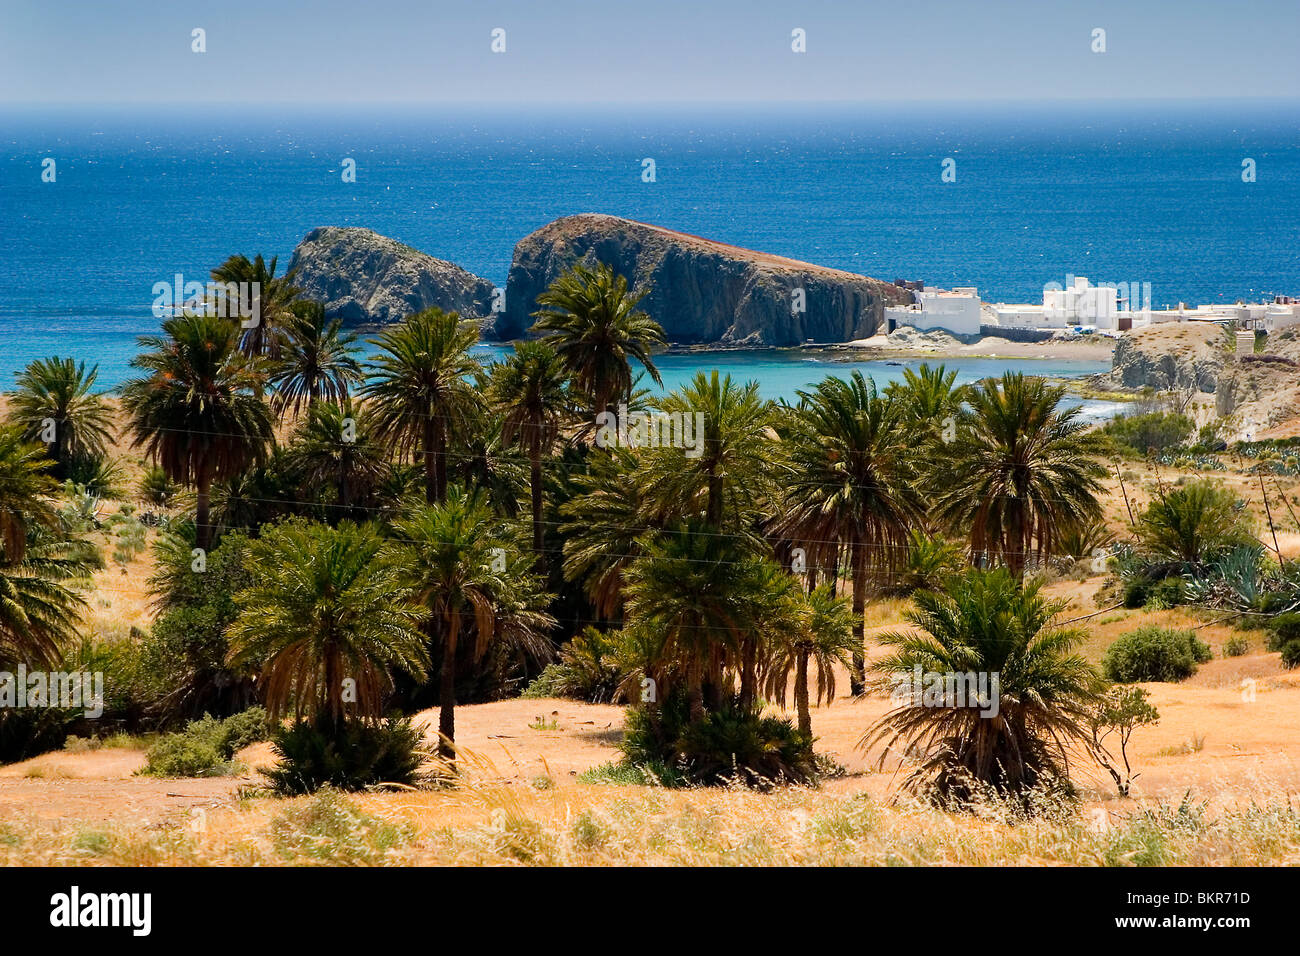 Villaggio al mare e palme Foto Stock